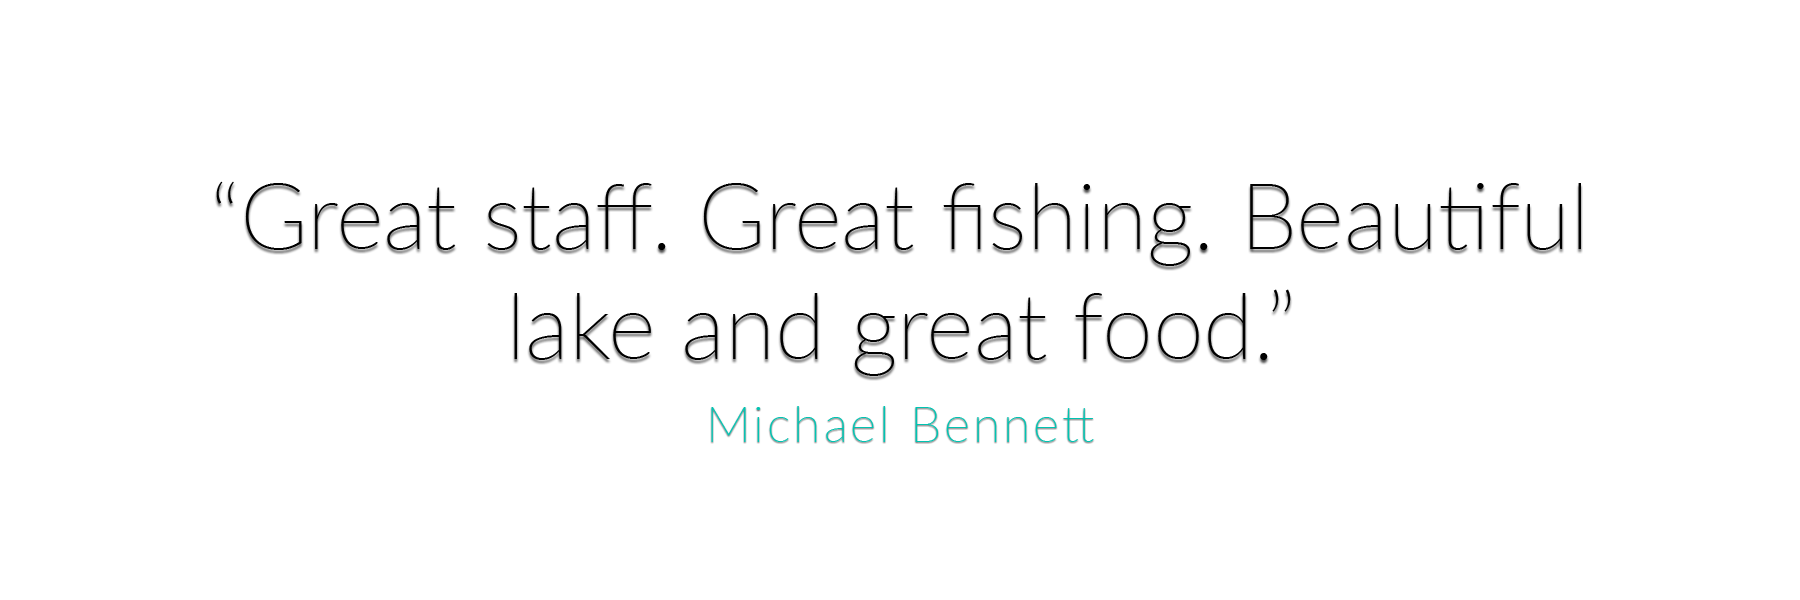 Michael Bennett Testimonial